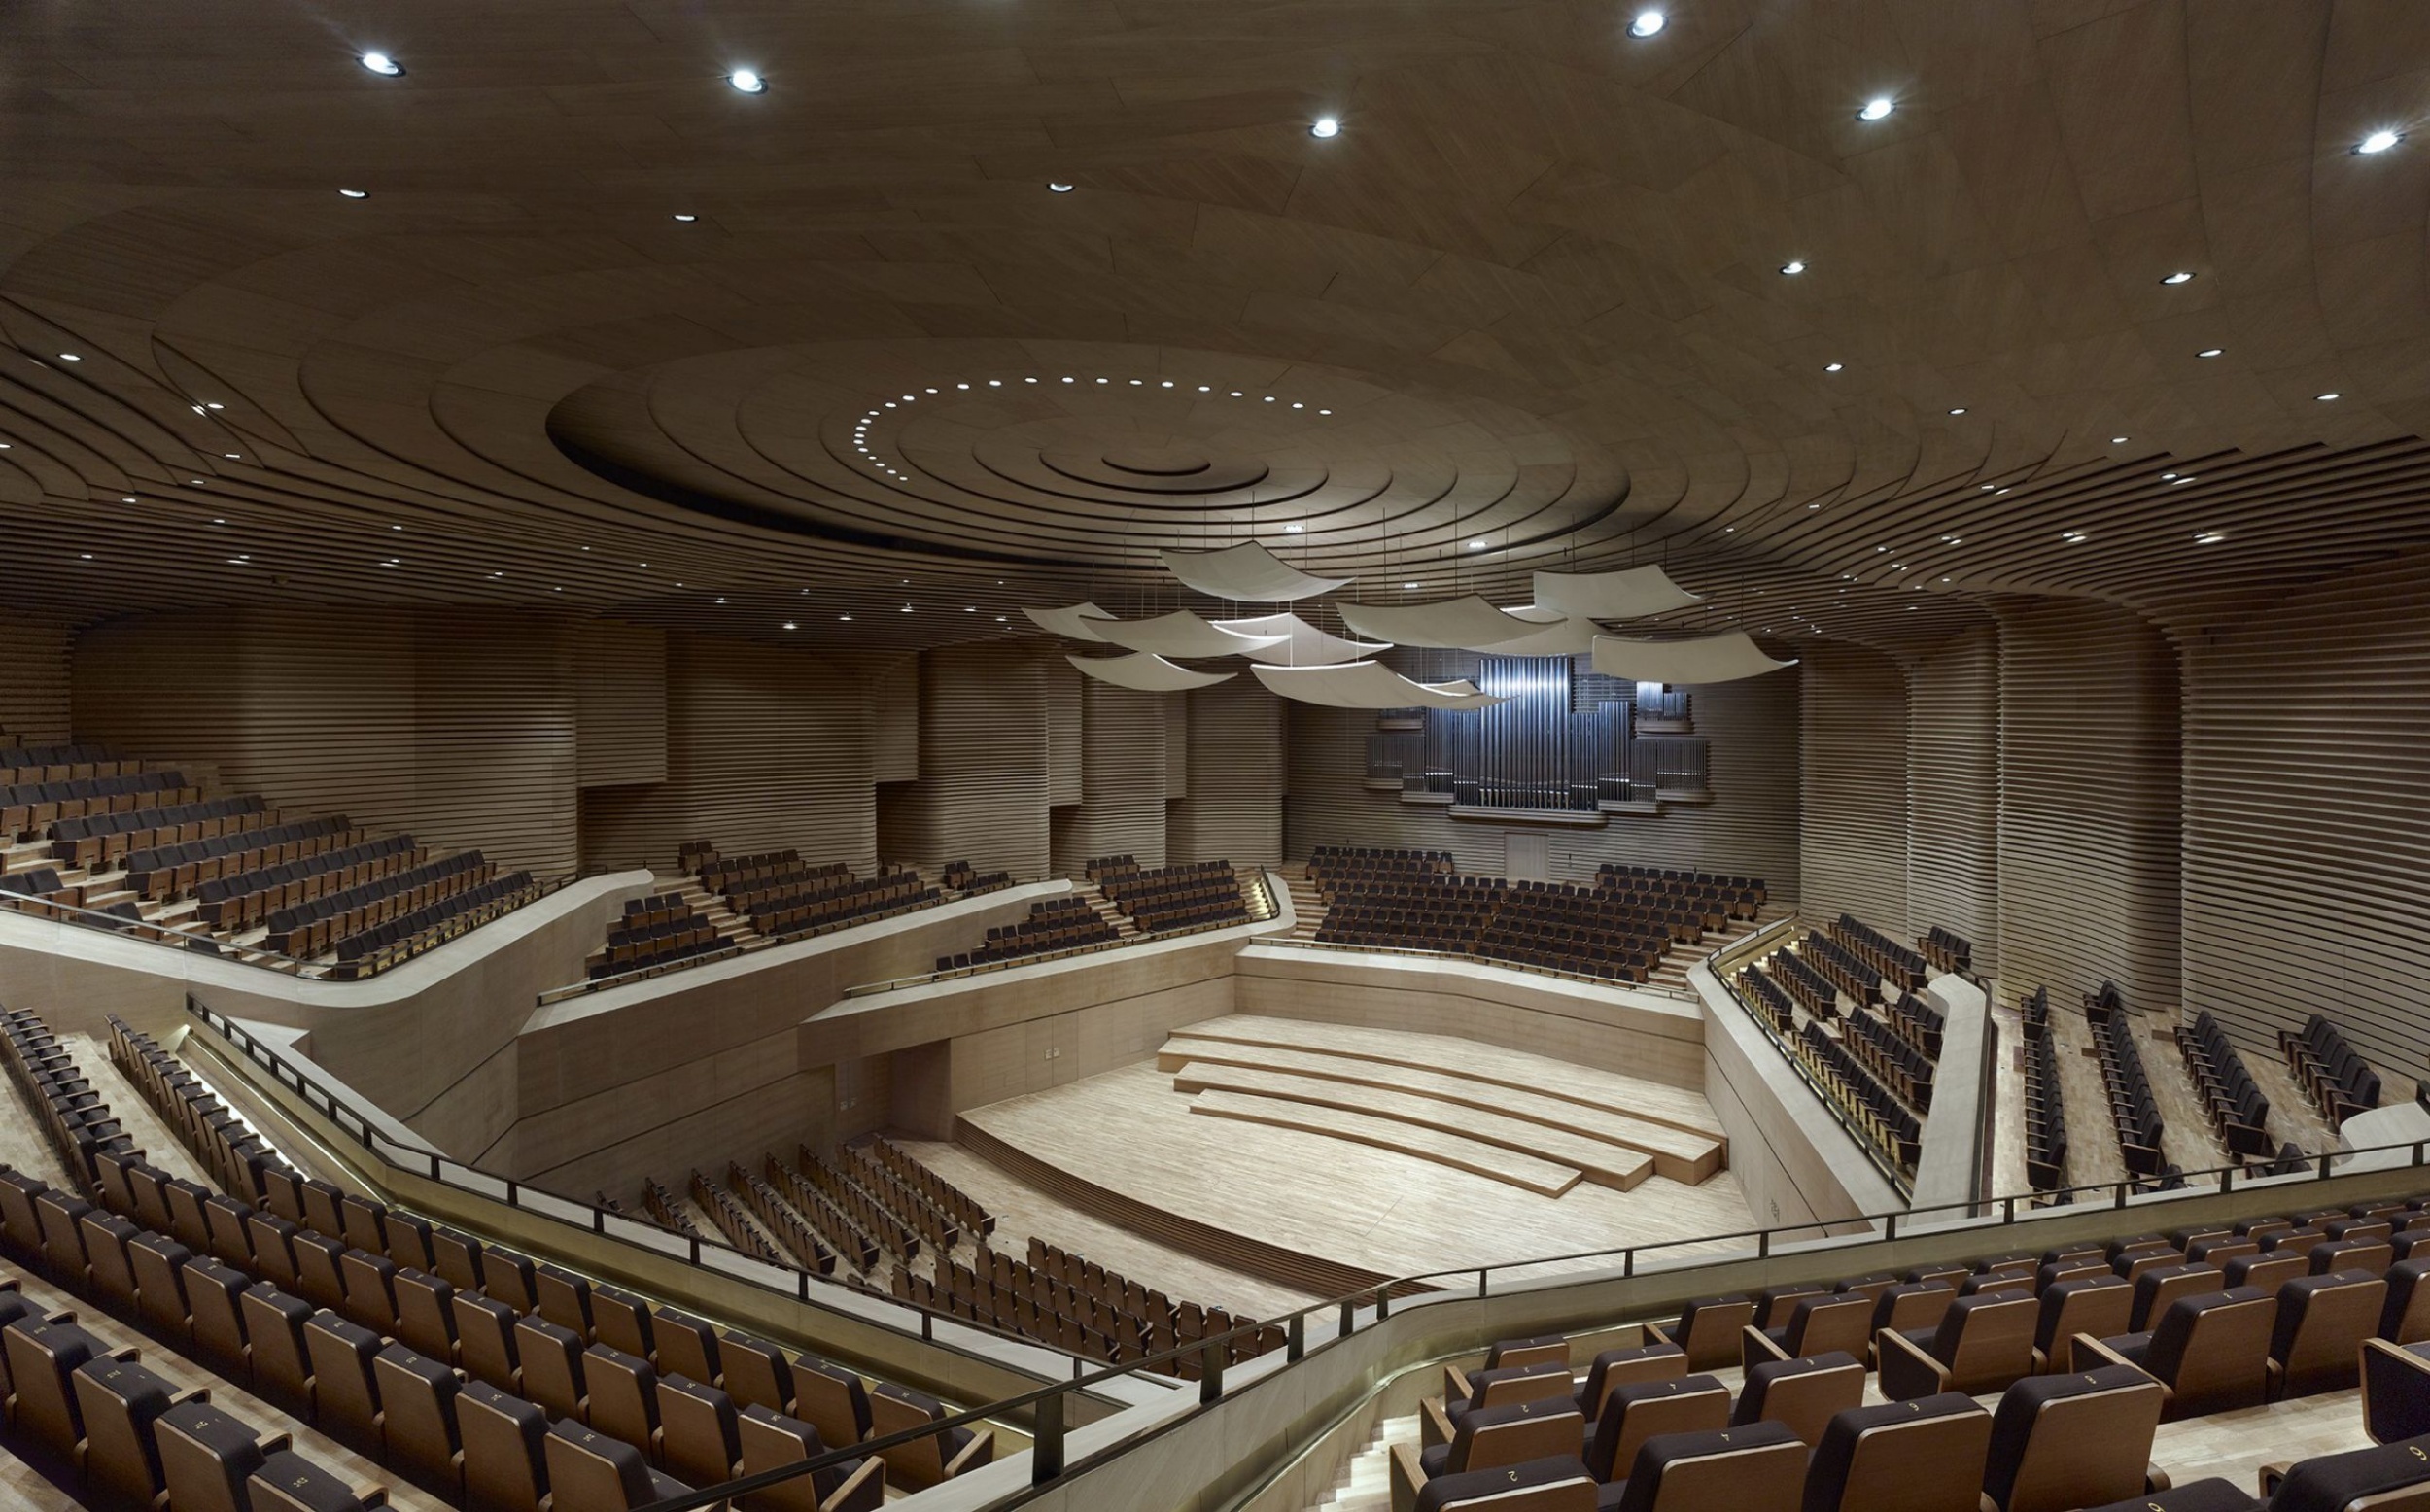 gerkan,marg和合伙人建筑师指定为天津大剧院歌剧厅和音乐厅的座位